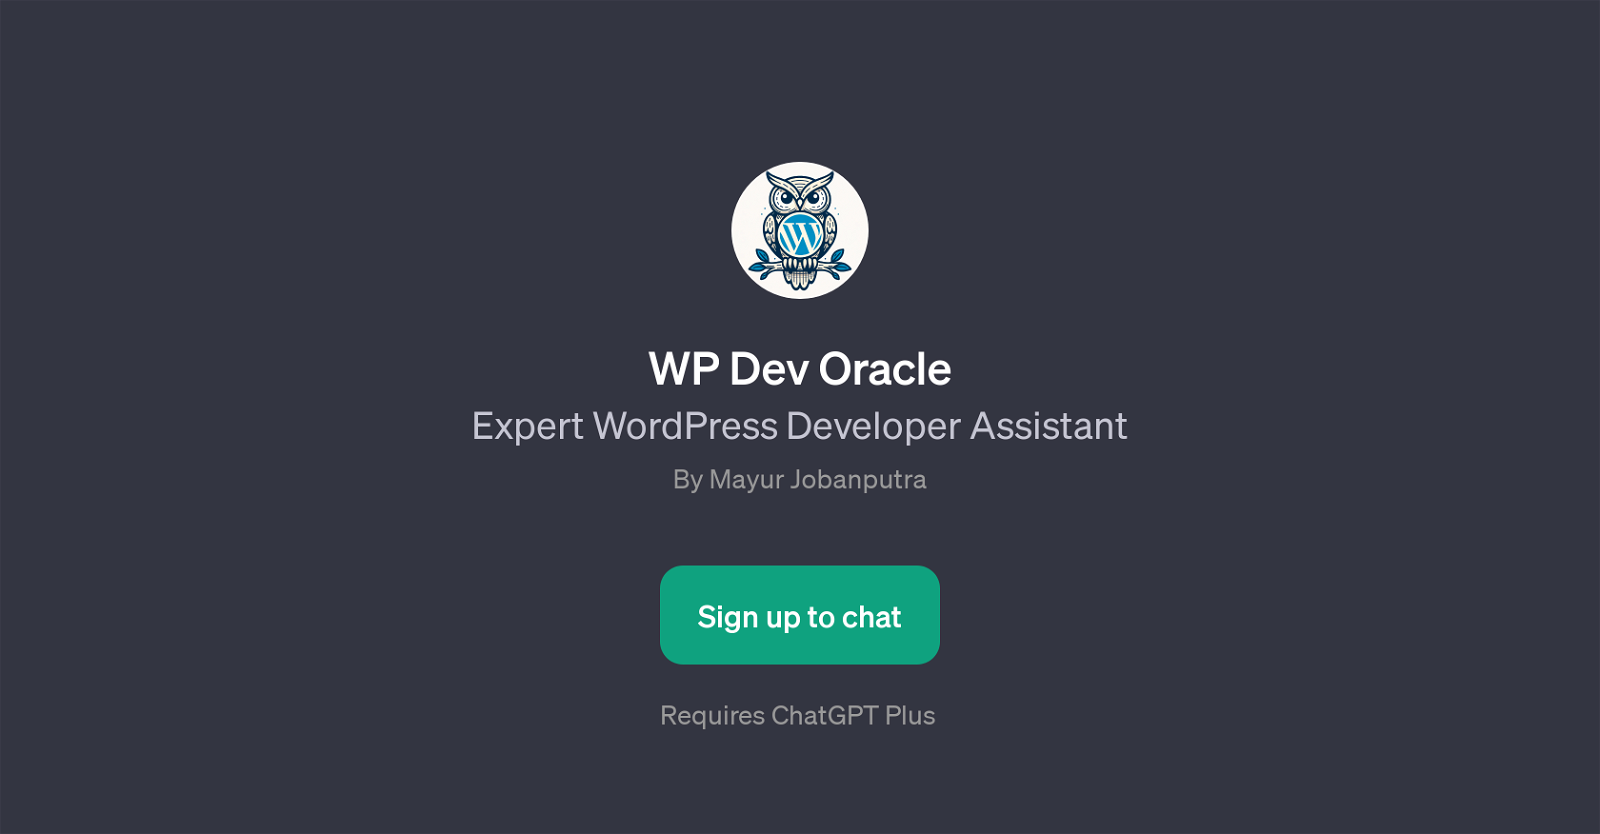 WP Dev Oracle website